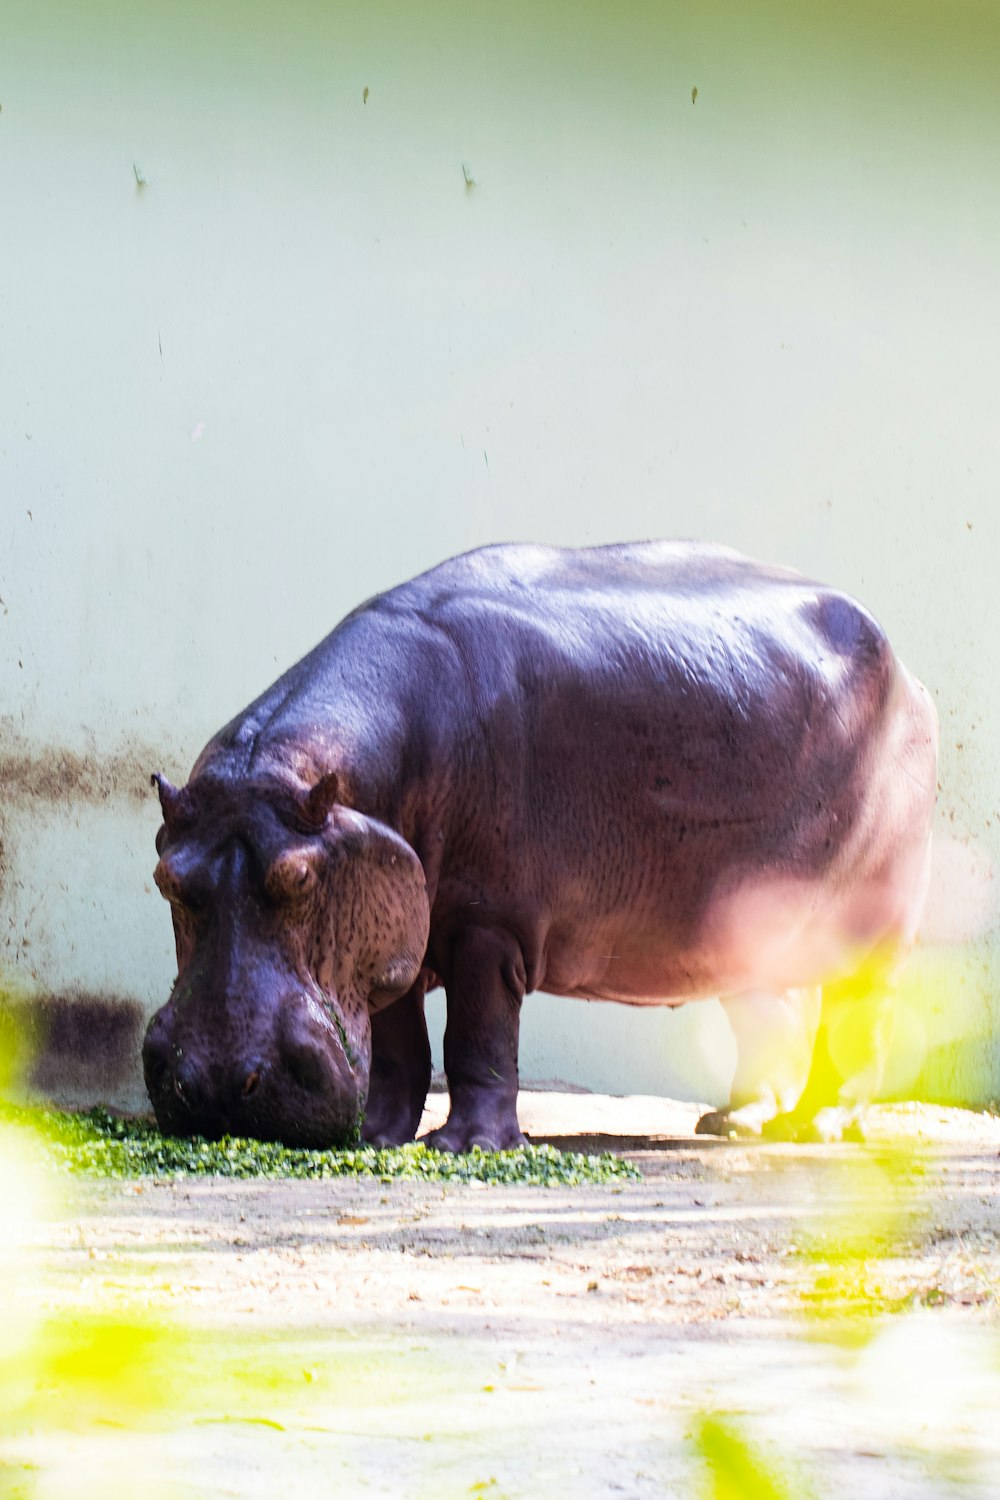 Un hipopótamo en el recinto de un zoológico comiendo hierba